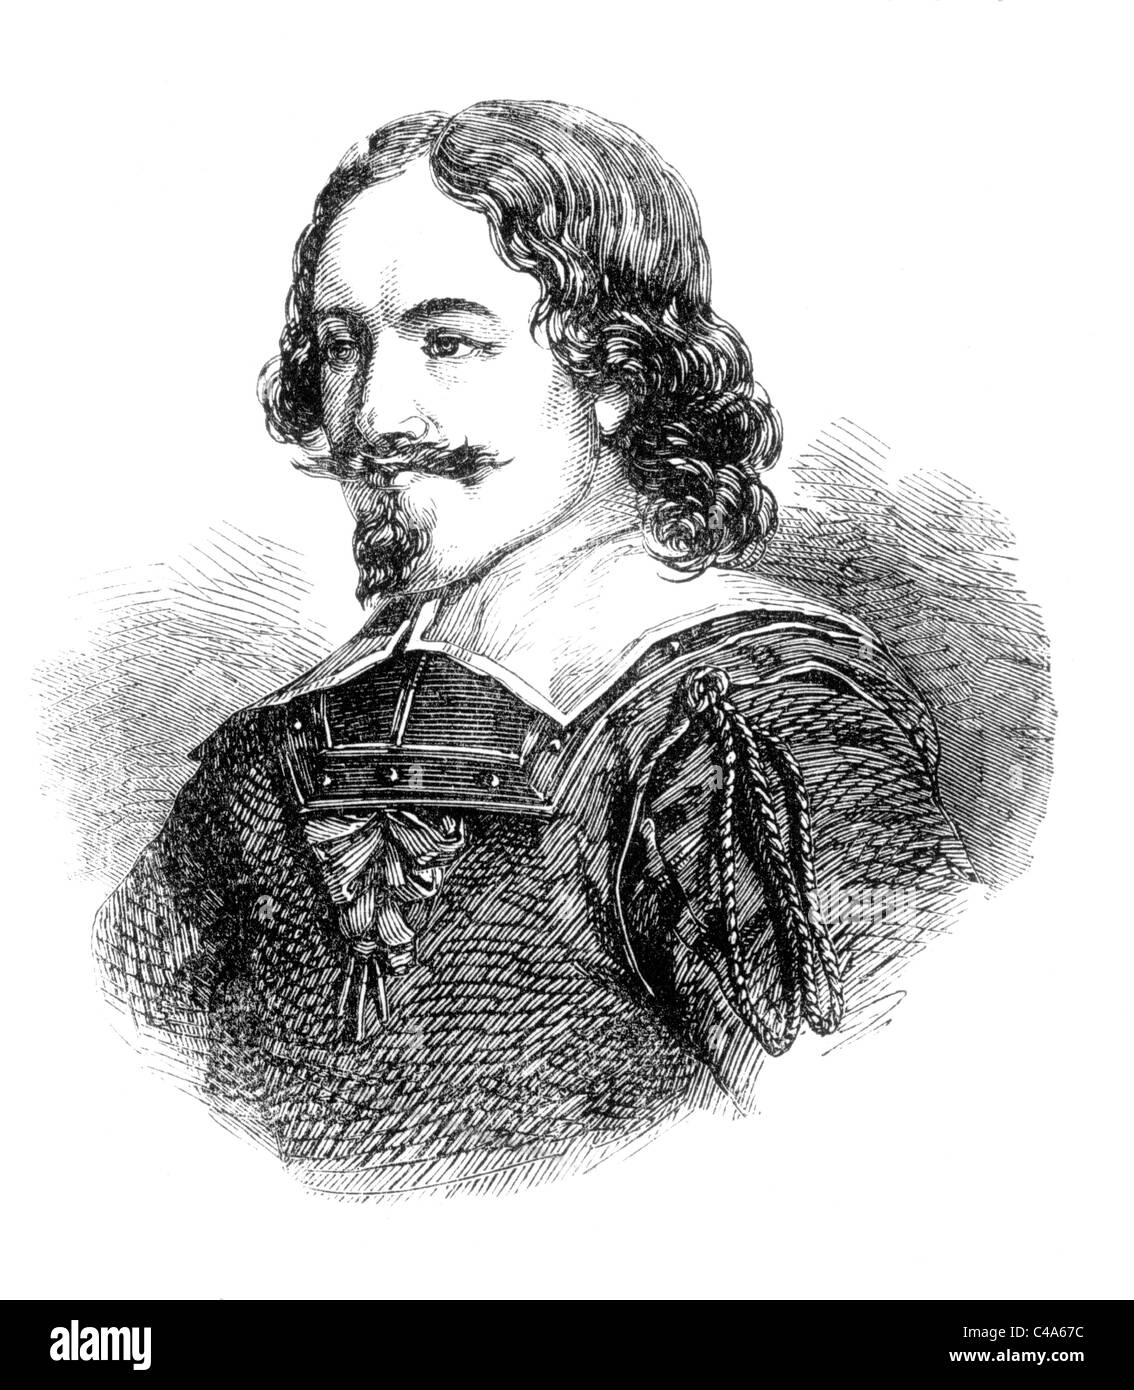 Porträt von General Leslie, Earl of Leven, englische Parlamentarier während der englischen Bürgerkriege; Schwarz und weiß-Abbildung; Stockfoto